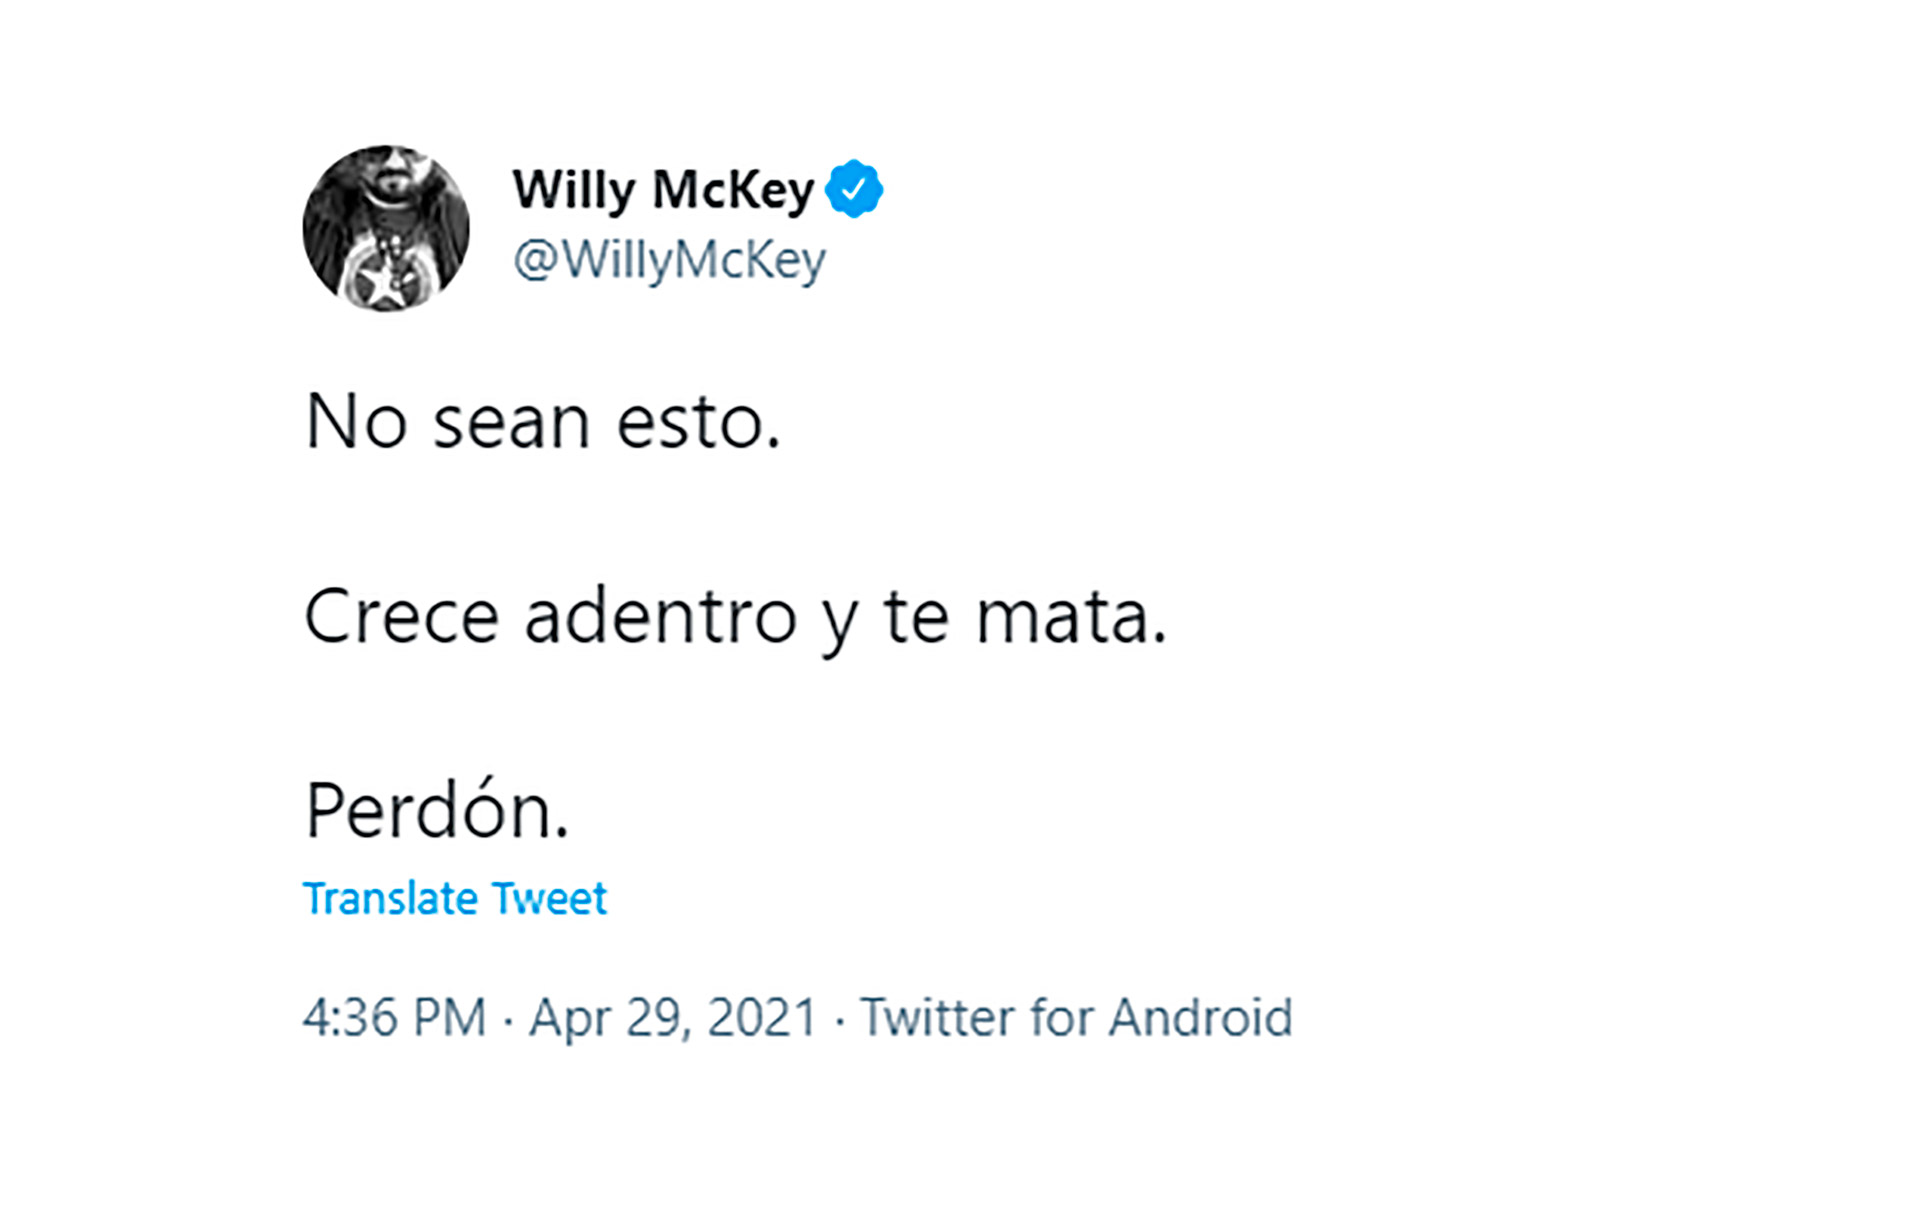 Último tuit del escritor venezolano antes de suicidarse 